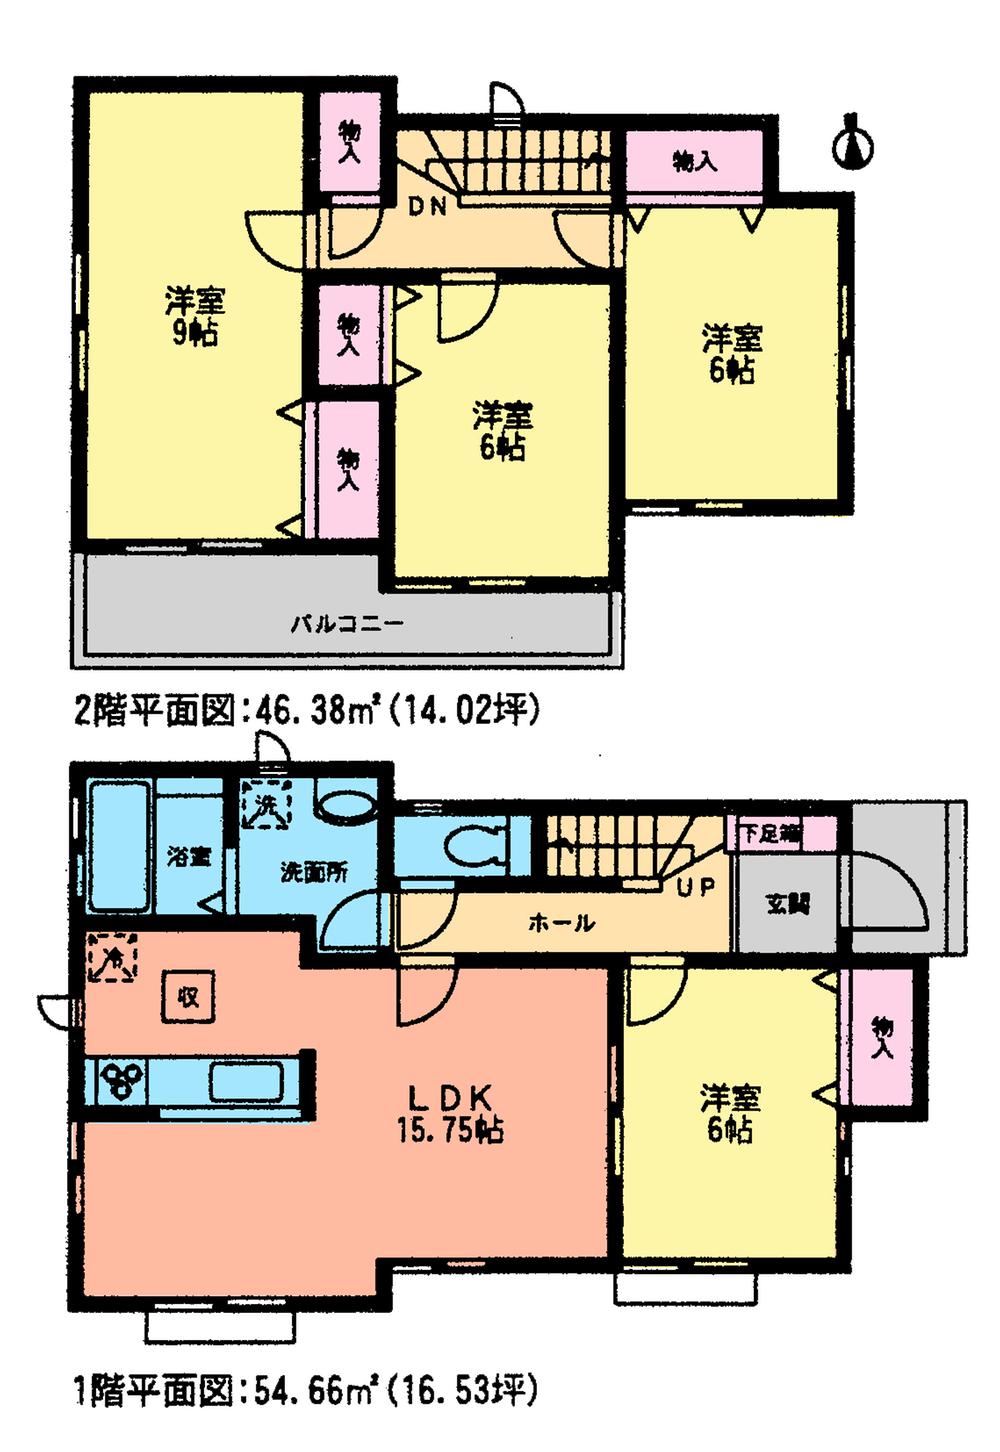 Floor plan. (A Building), Price 18,800,000 yen, 4LDK, Land area 196 sq m , Building area 101.04 sq m